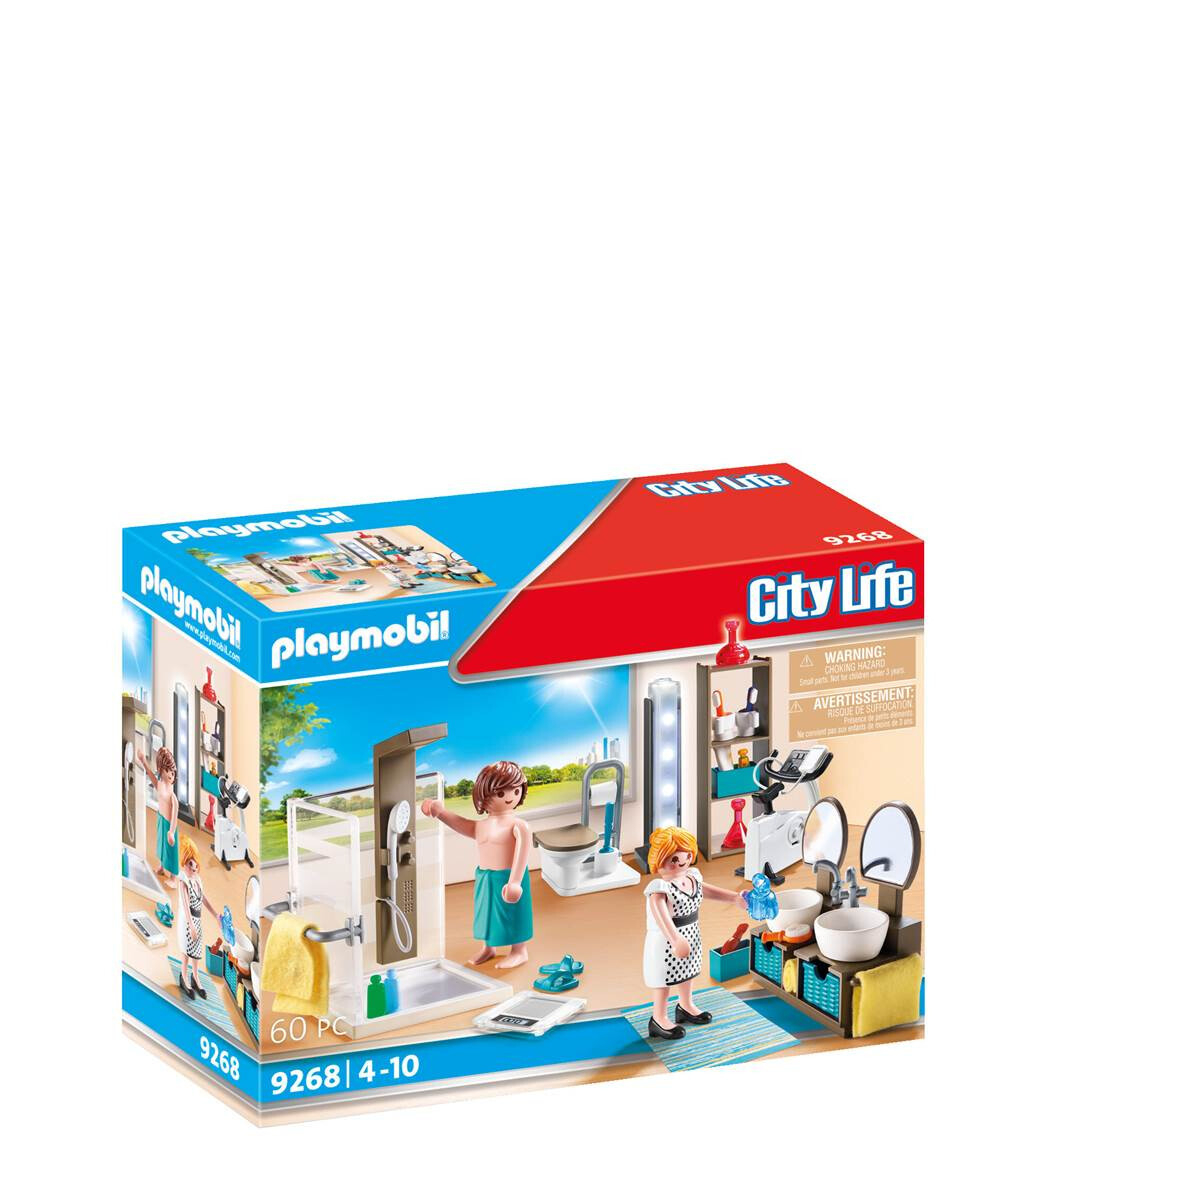 Badezimmer | Playmobil® - Spielzeugladen Neusser - Das Richtige Für D pertaining to Playmobil City Life Badezimmer